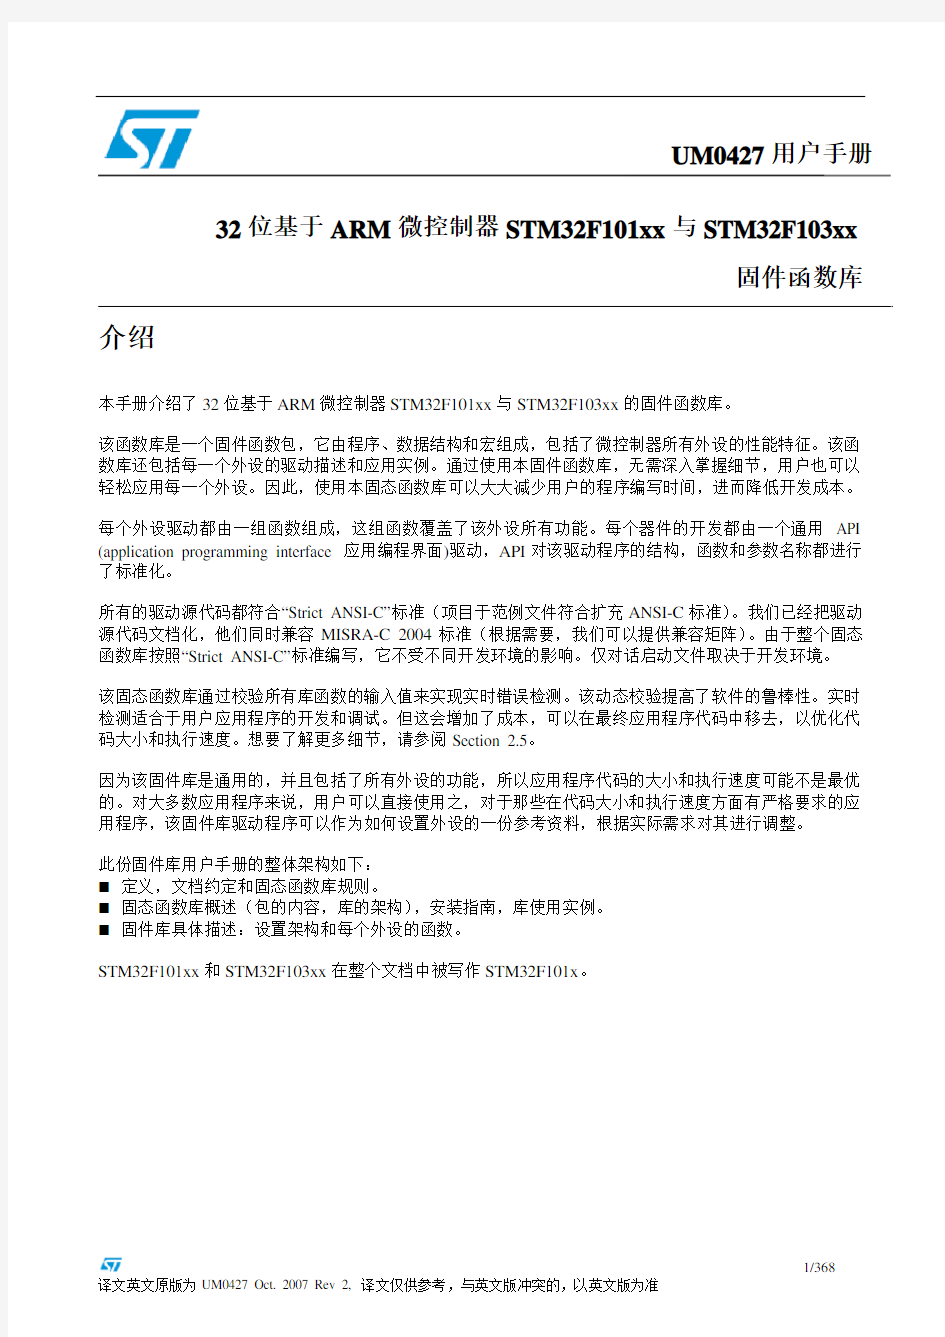 STM32固件库使用手册的中文翻译版